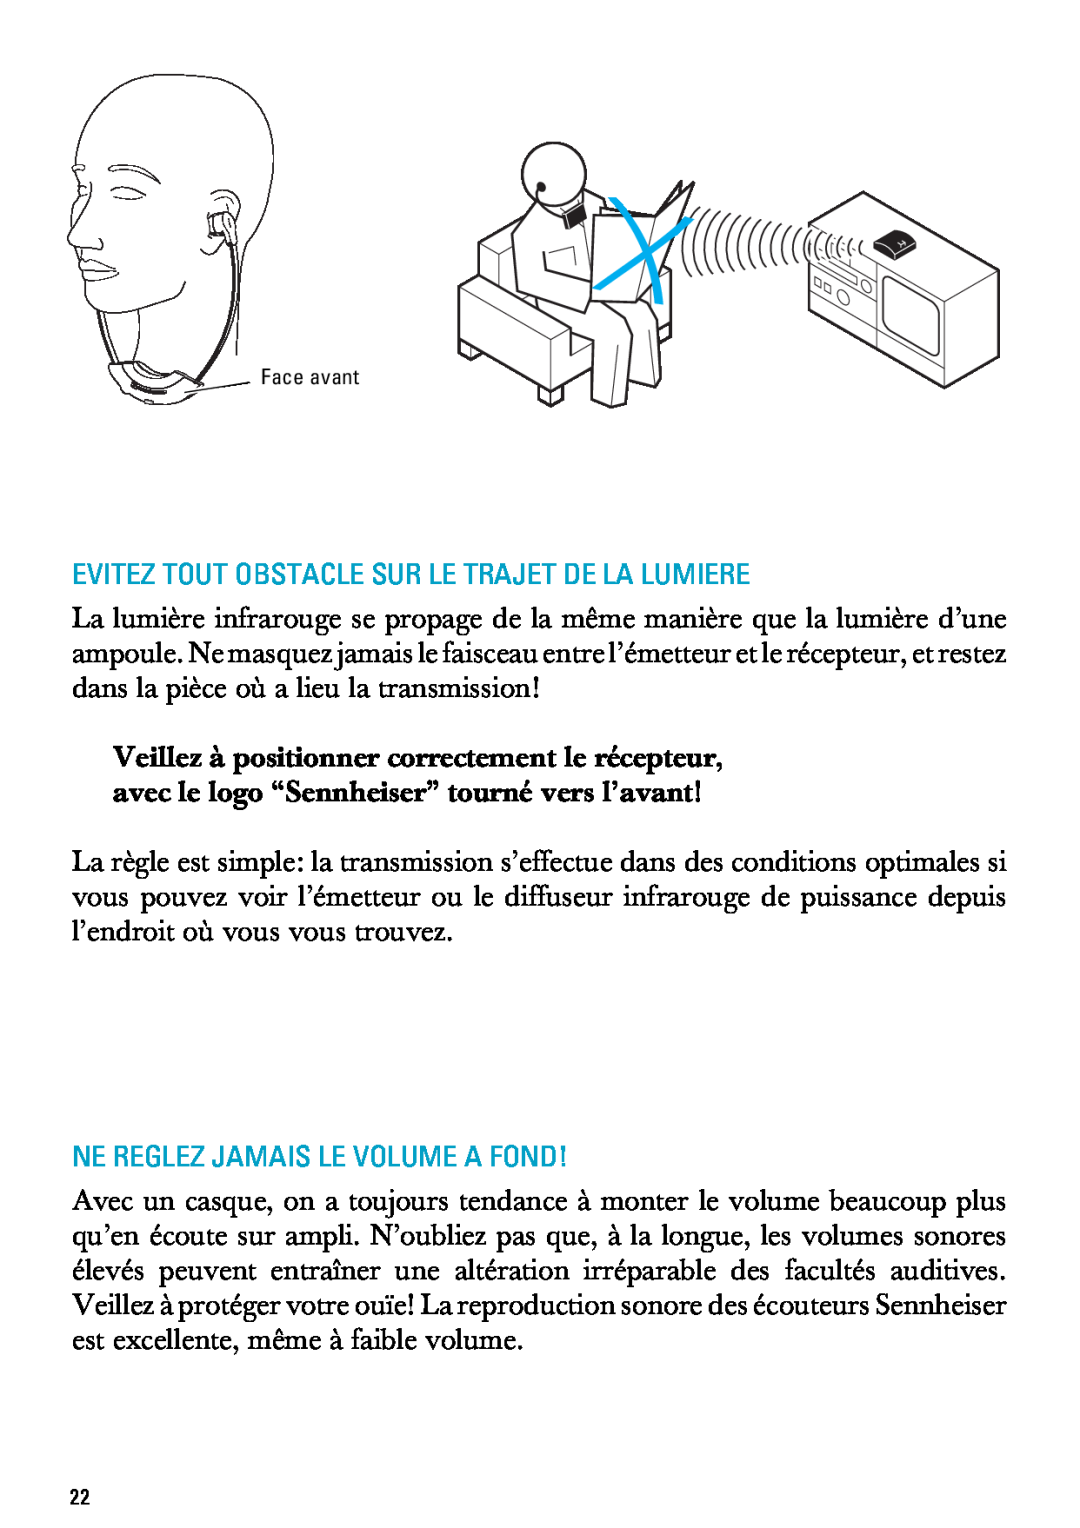 Sennheiser RI 300 manual Evitez Tout Obstacle Sur Le Trajet De La Lumiere, Ne Reglez Jamais Le Volume A Fond, Face avant 